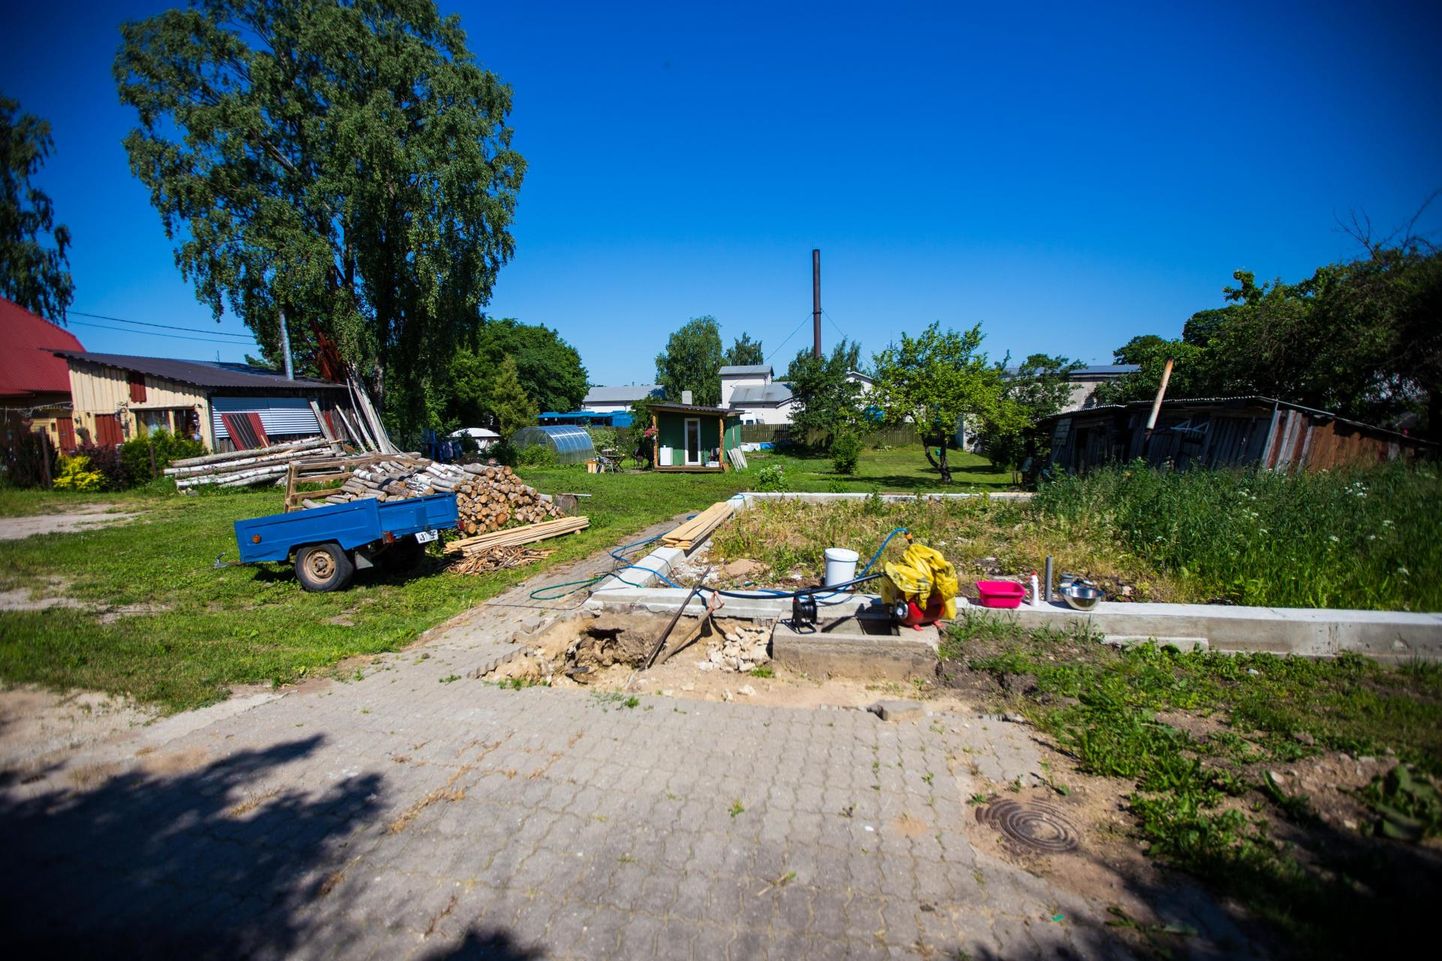 Eelmisel aastal mõned päevad enne jaanipäeva jäi üks Rakveres Tartu tänaval elanud perekond hetkega oma kodust ja varast ilma. Täna on sinna kerkinud väike suvila moodi majake. Plaane on veel.